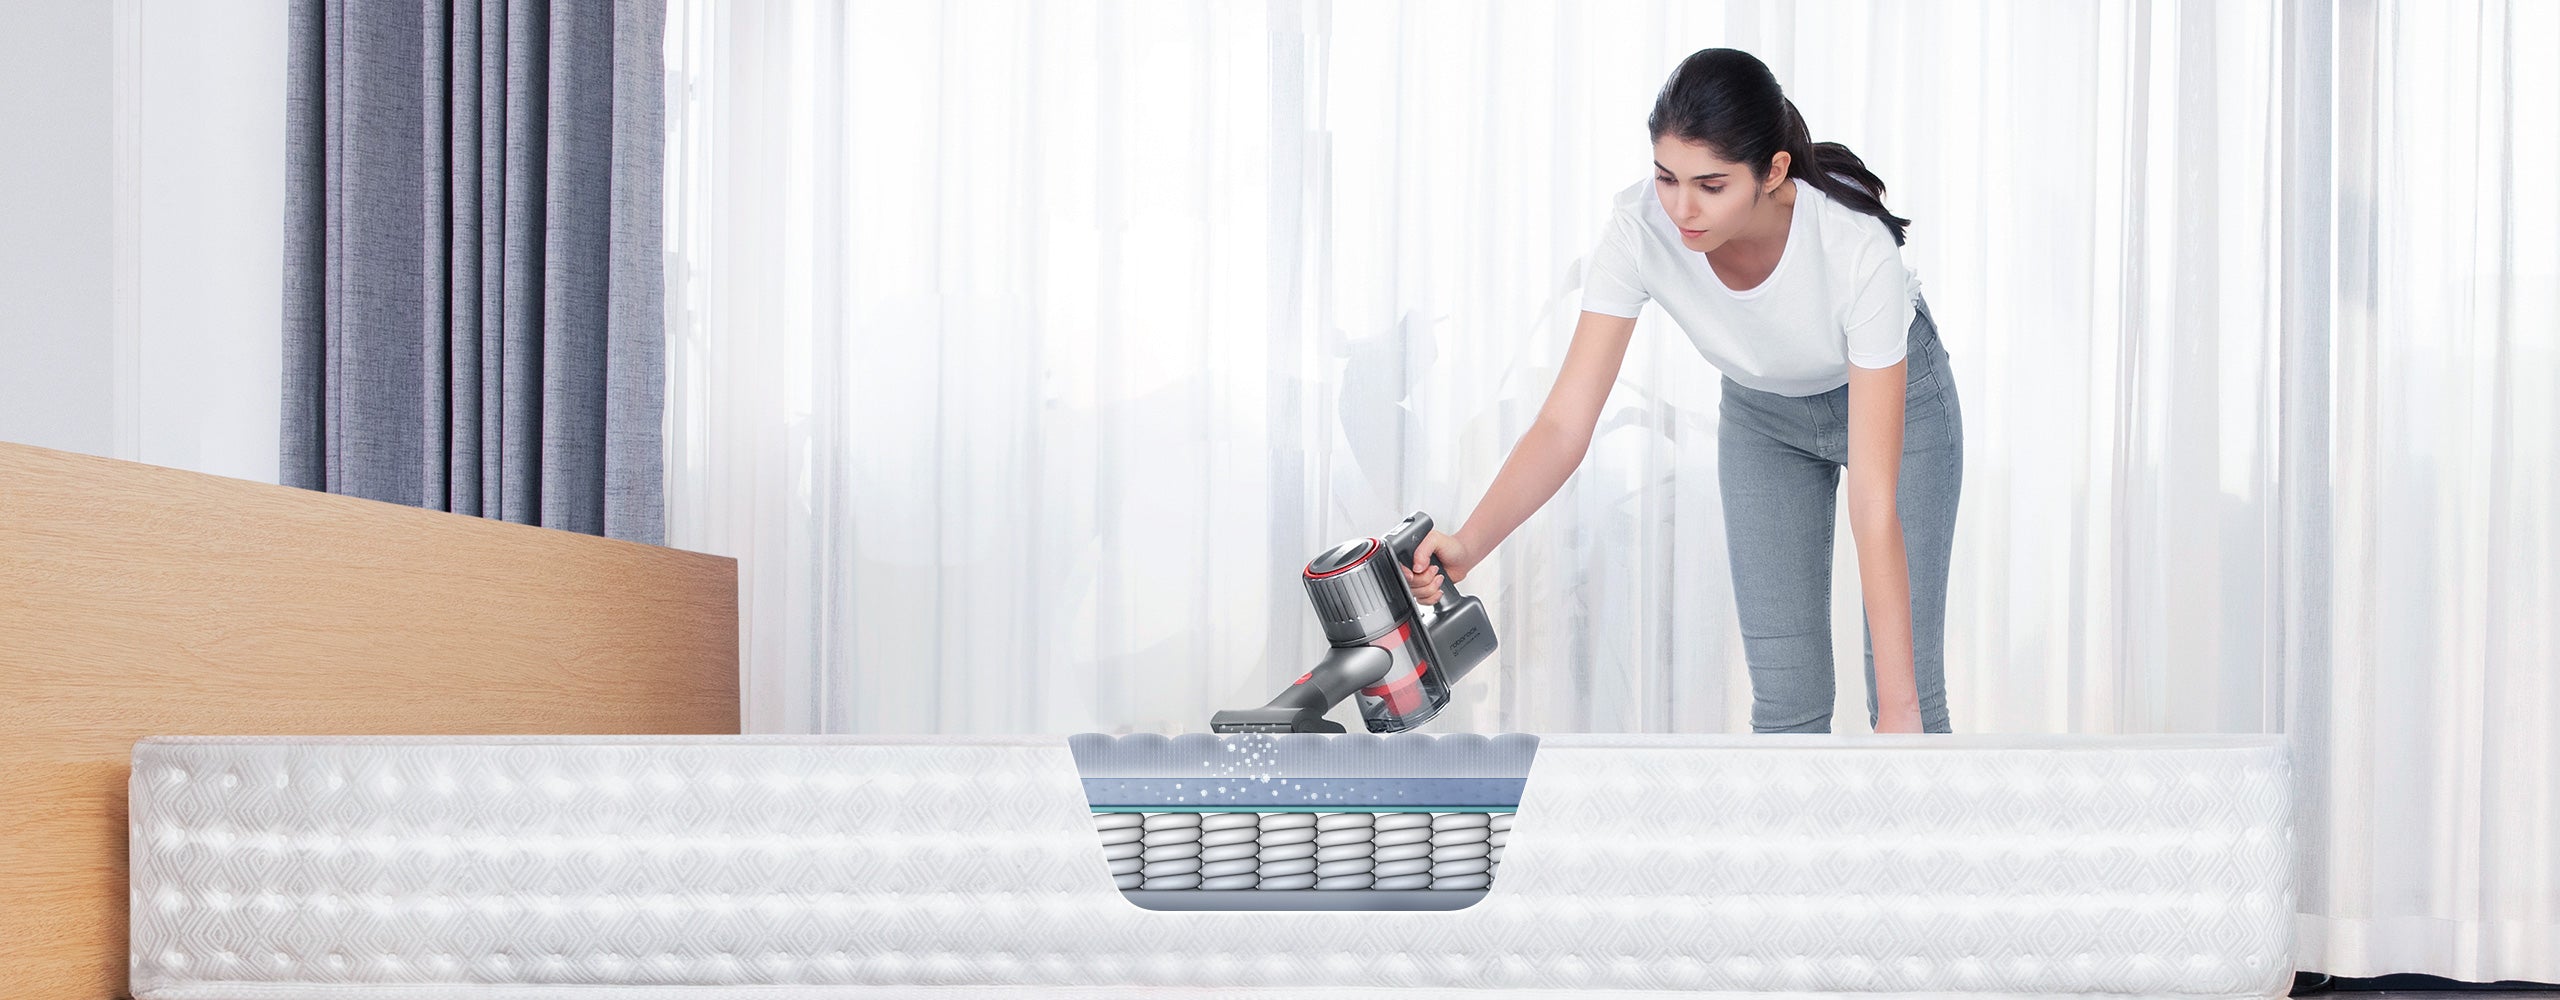 Roborock H6 создает всасывание силой до 150 аВт, чтобы как следует вычистить ковры, кровати и обивку в автомобиле